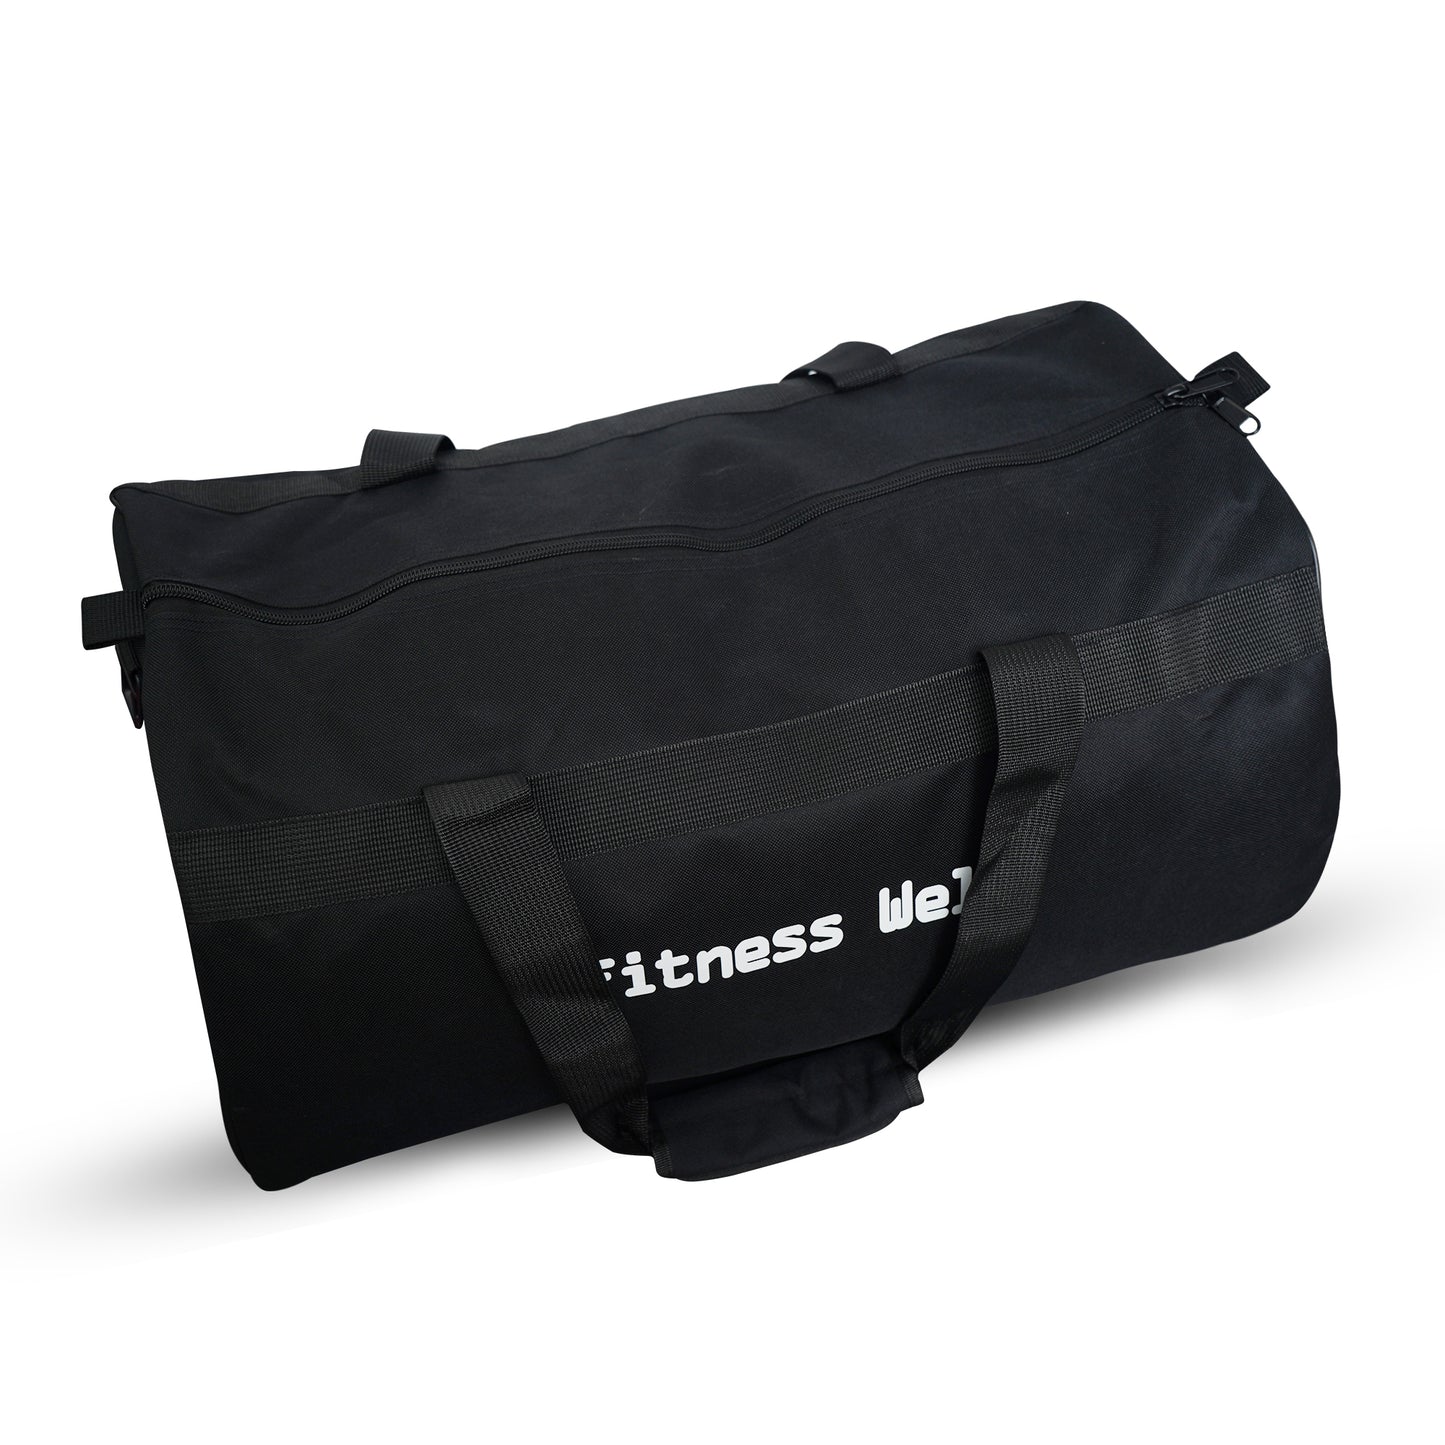 Fitness Welt Duffle Bag